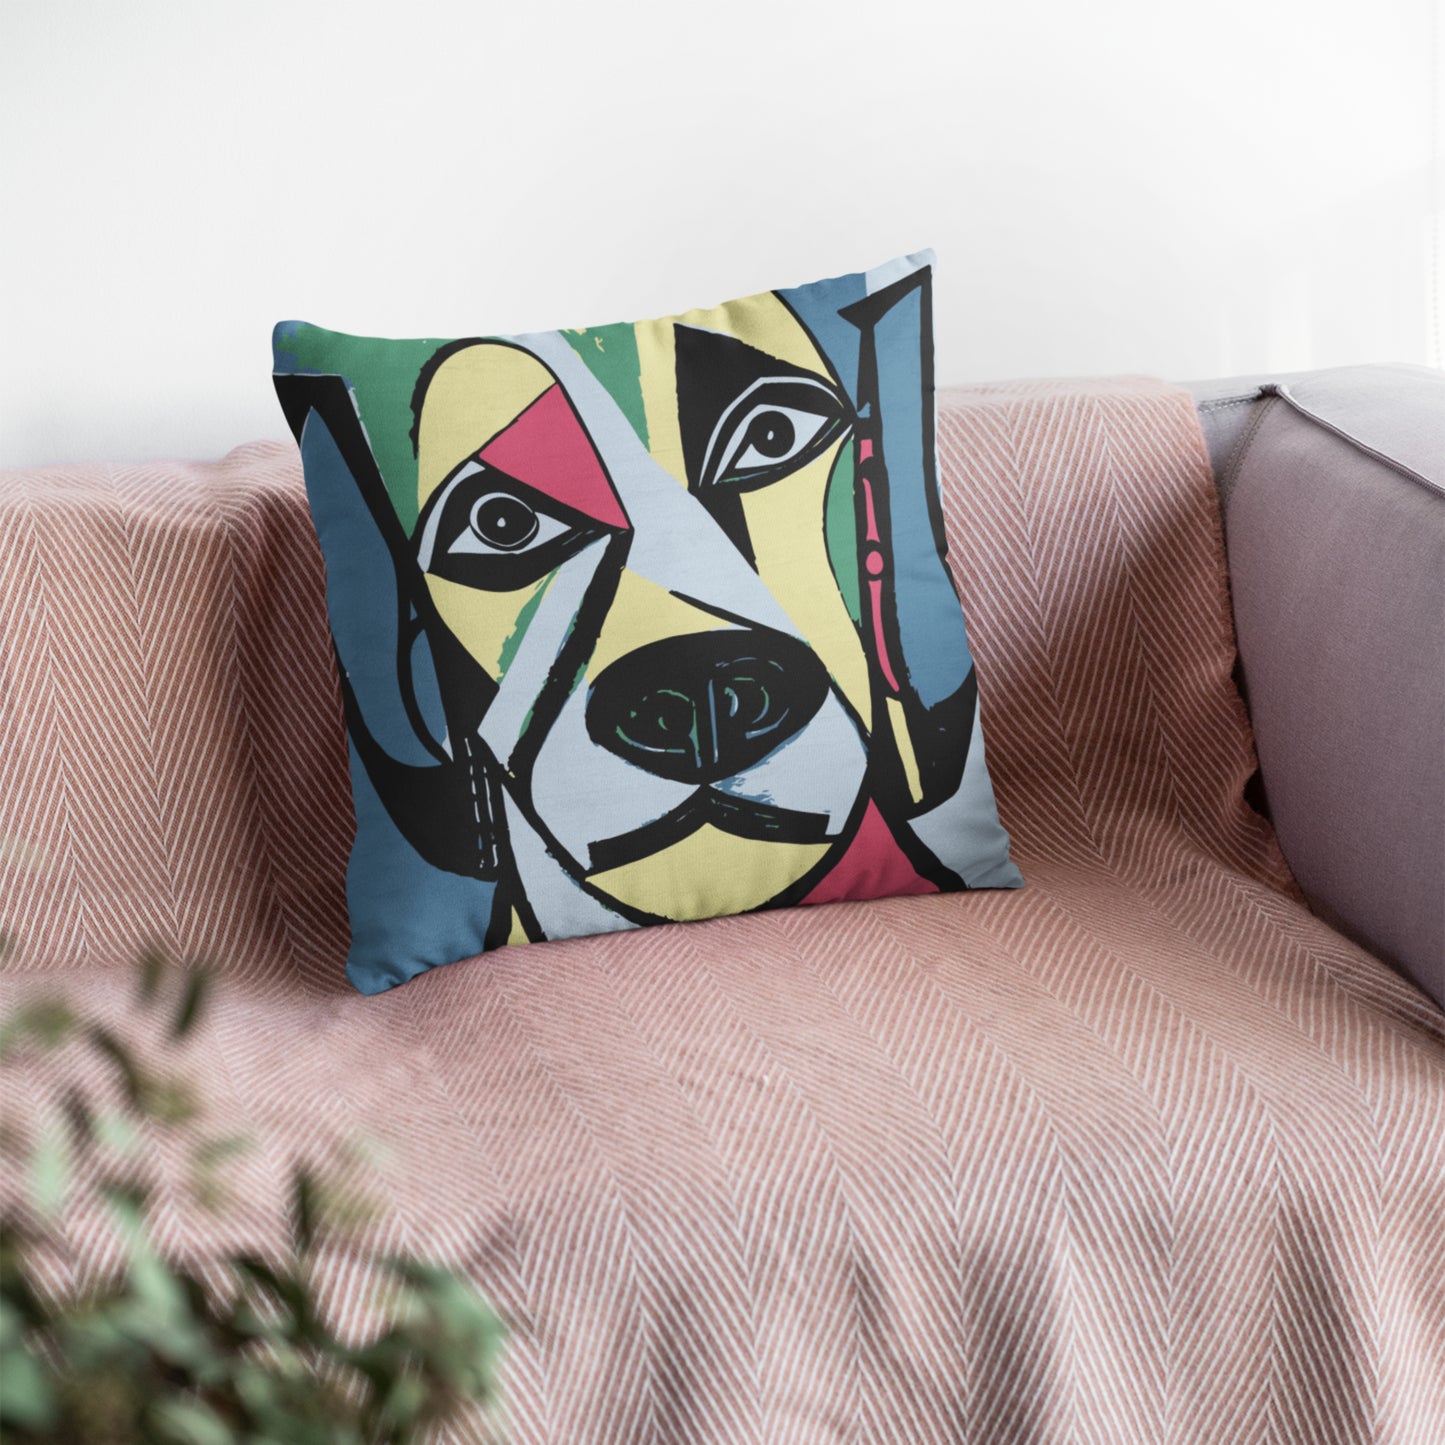 Whimsical Dog Illustration Pillow Design